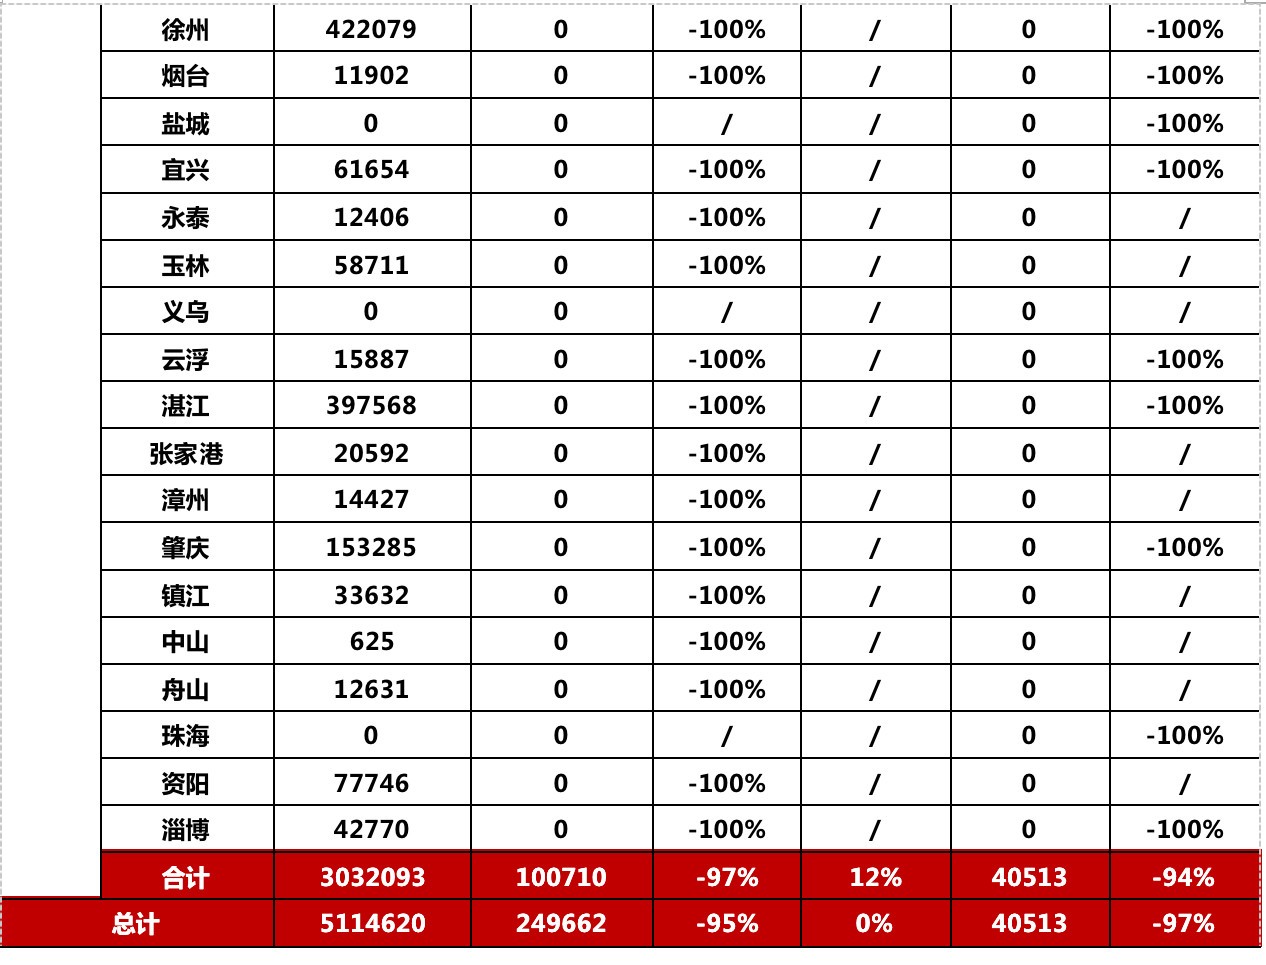 数据来源：CRIC中国房地产决策咨询系统
